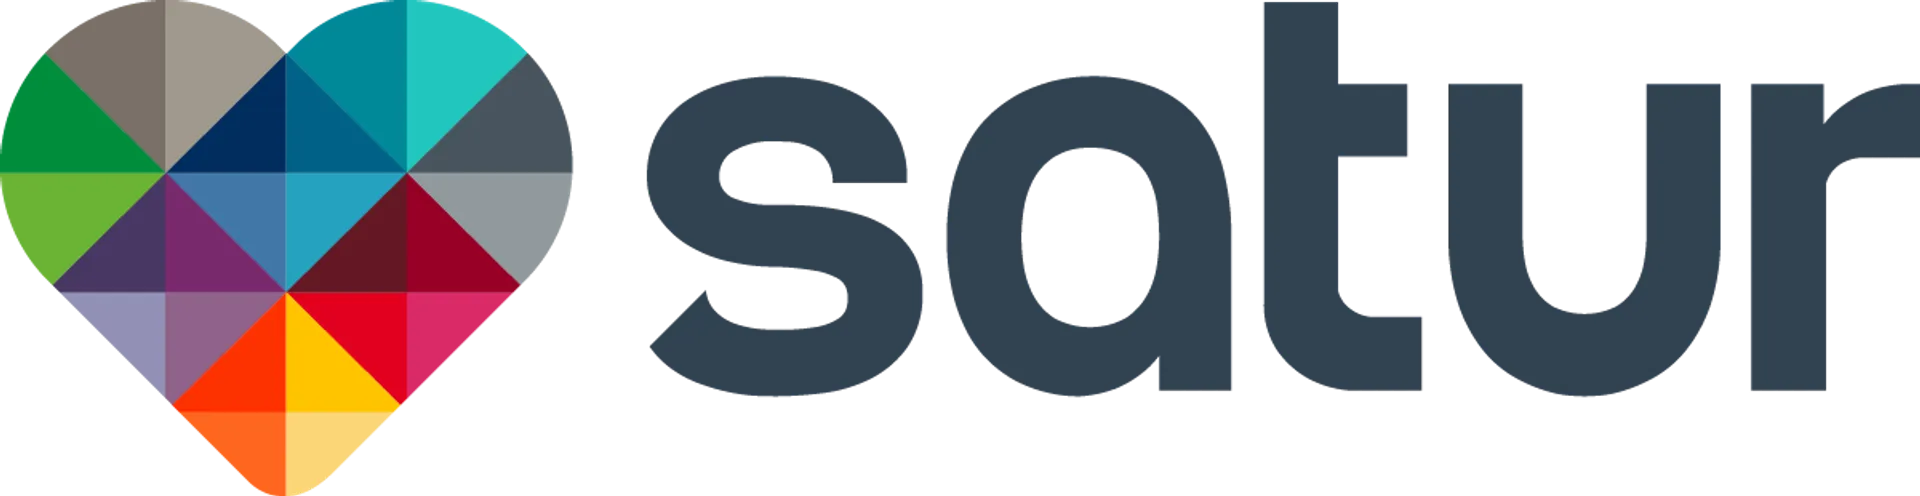 SATUR logo